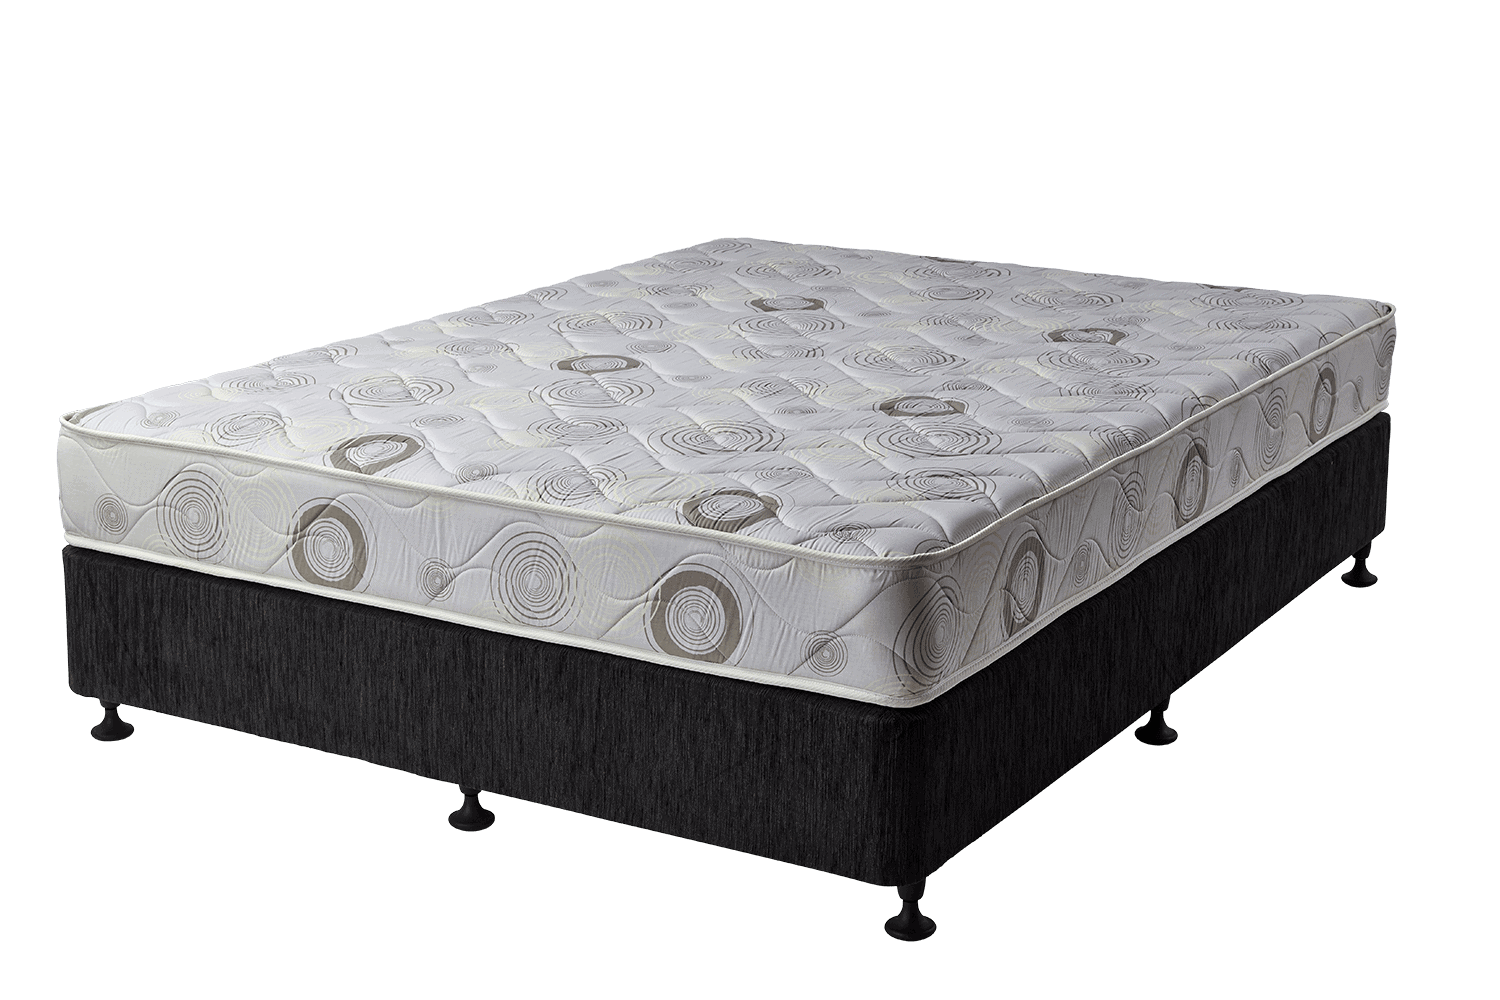 60 x 70 queen mattress